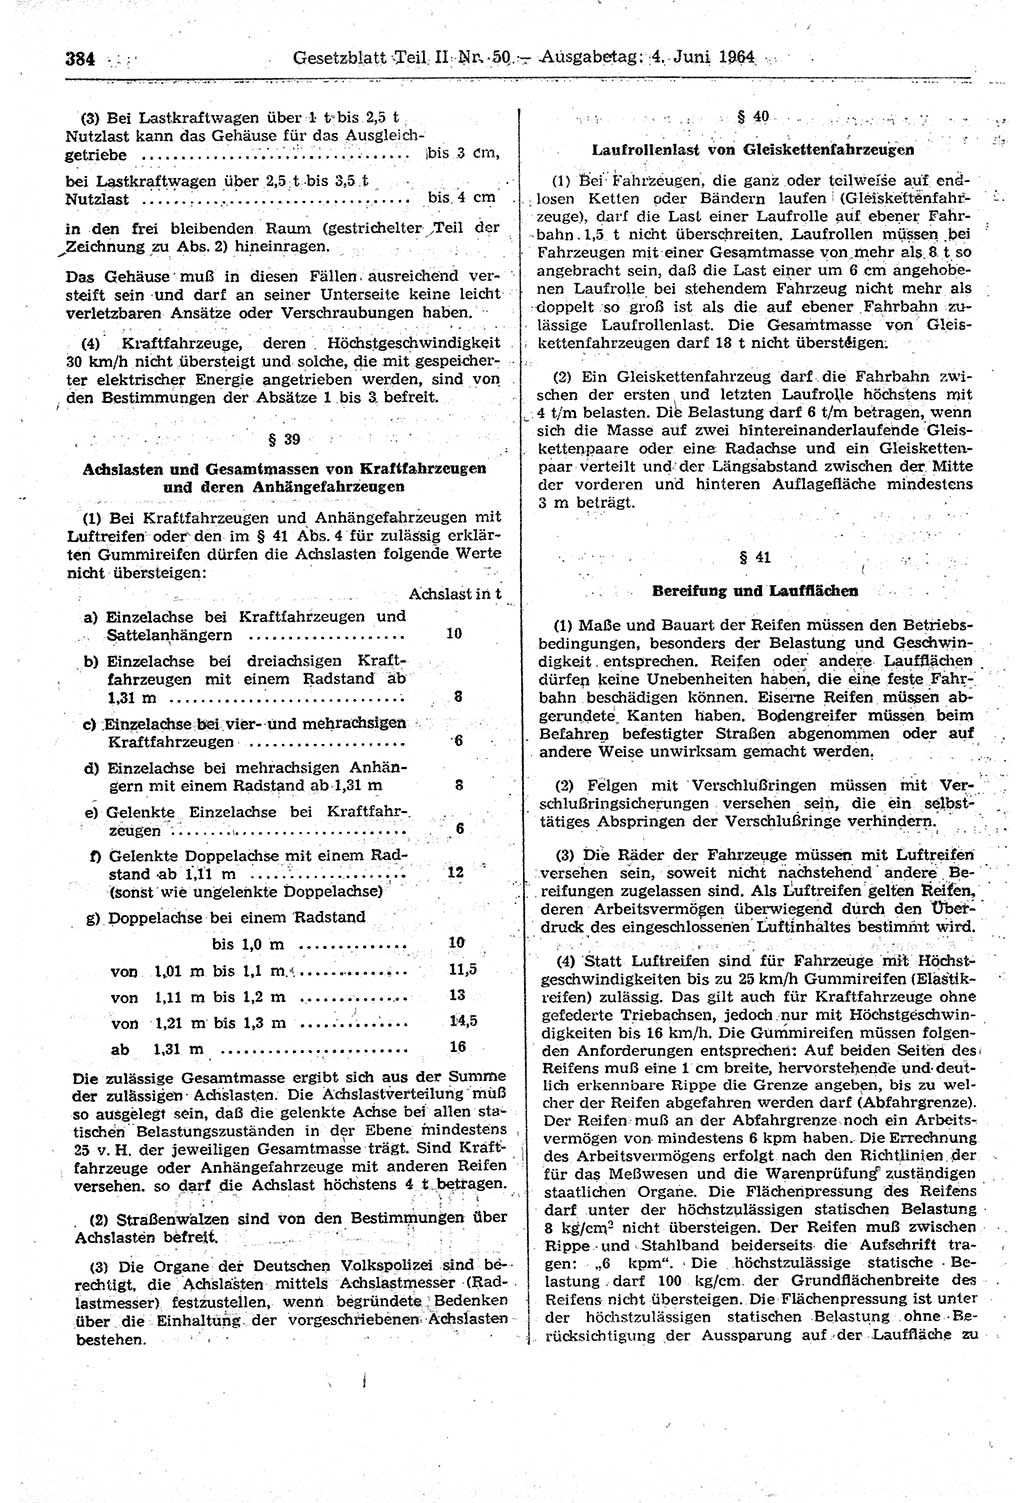 Gesetzblatt (GBl.) der Deutschen Demokratischen Republik (DDR) Teil ⅠⅠ 1964, Seite 384 (GBl. DDR ⅠⅠ 1964, S. 384)